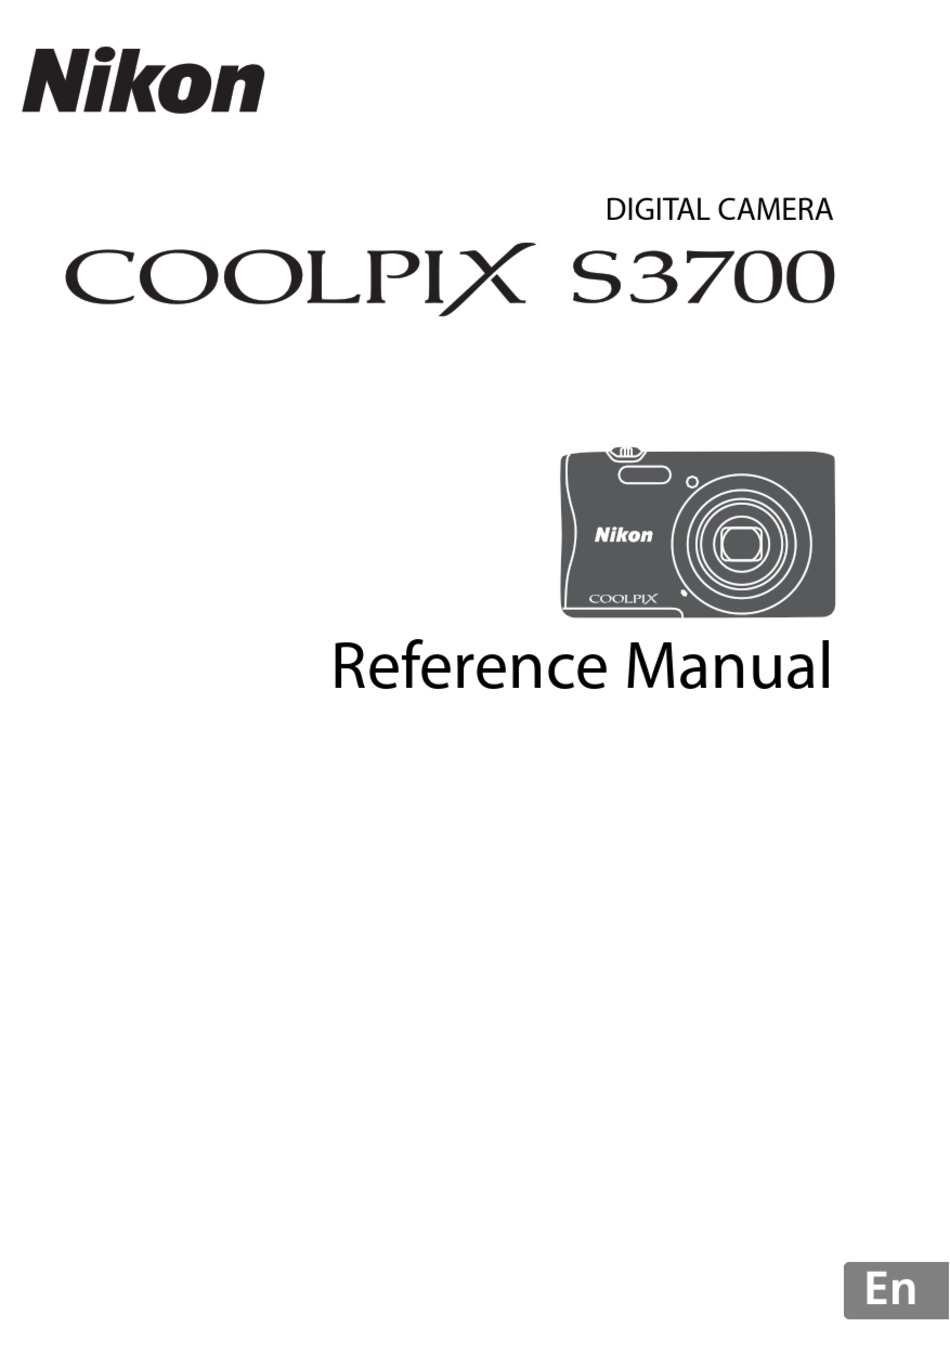 NIKON COOLPIX REFERENCE MANUAL Pdf Download | ManualsLib